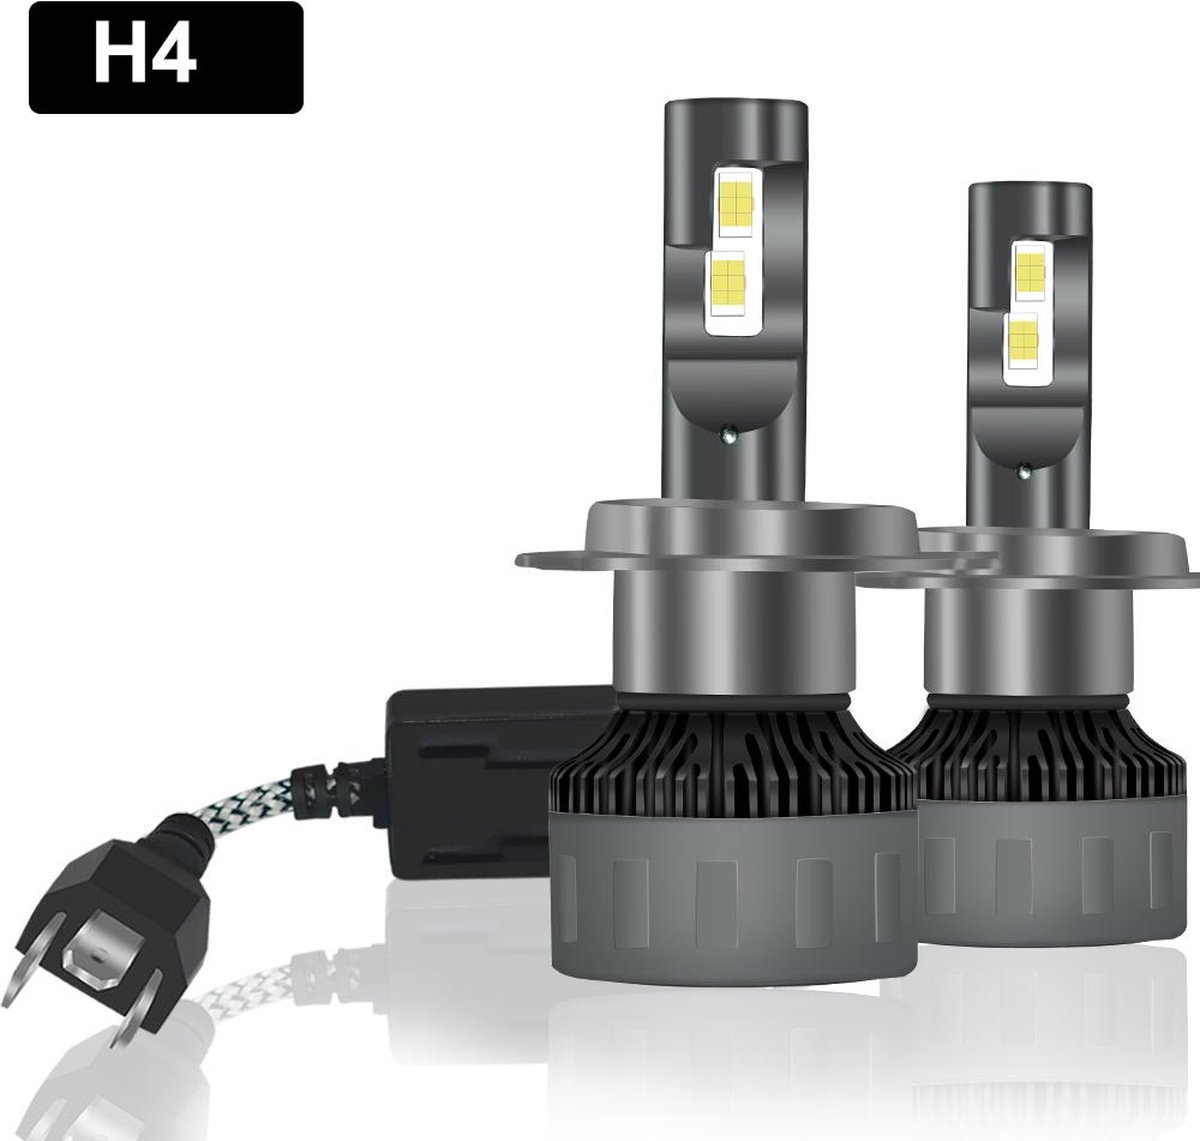 TLVX H4 Premium High Power LED lampen 31.200 Lumen 6000k Helder Wit licht (set 2 stuks) CANBUS EMC adapter, Extra Fel Wit licht, CSP LED CHIP 100 Watt Auto, Dimlicht - Grootlicht – Mistlicht -Koplampen - Autolamp - Autolampen - 12V - APK Lichtbeeld